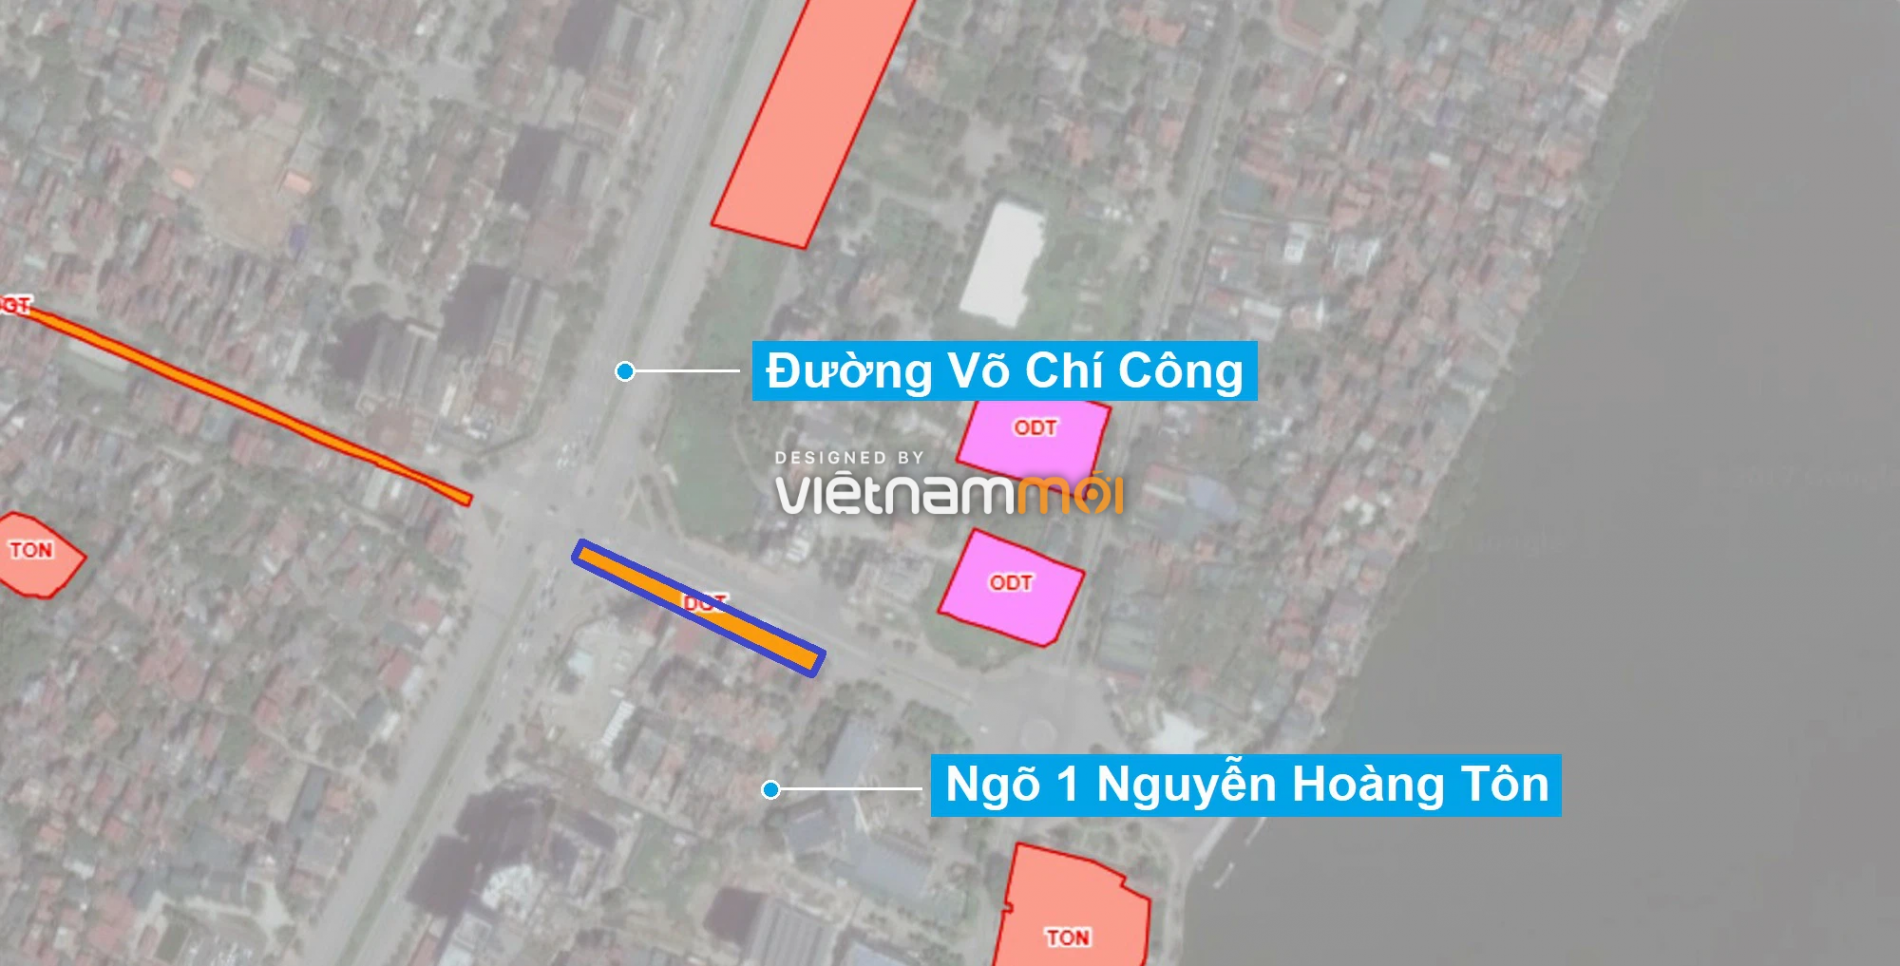 Những khu đất sắp thu hồi để mở đường ở quận Tây Hồ, Hà Nội (phần 1) - Ảnh 1.